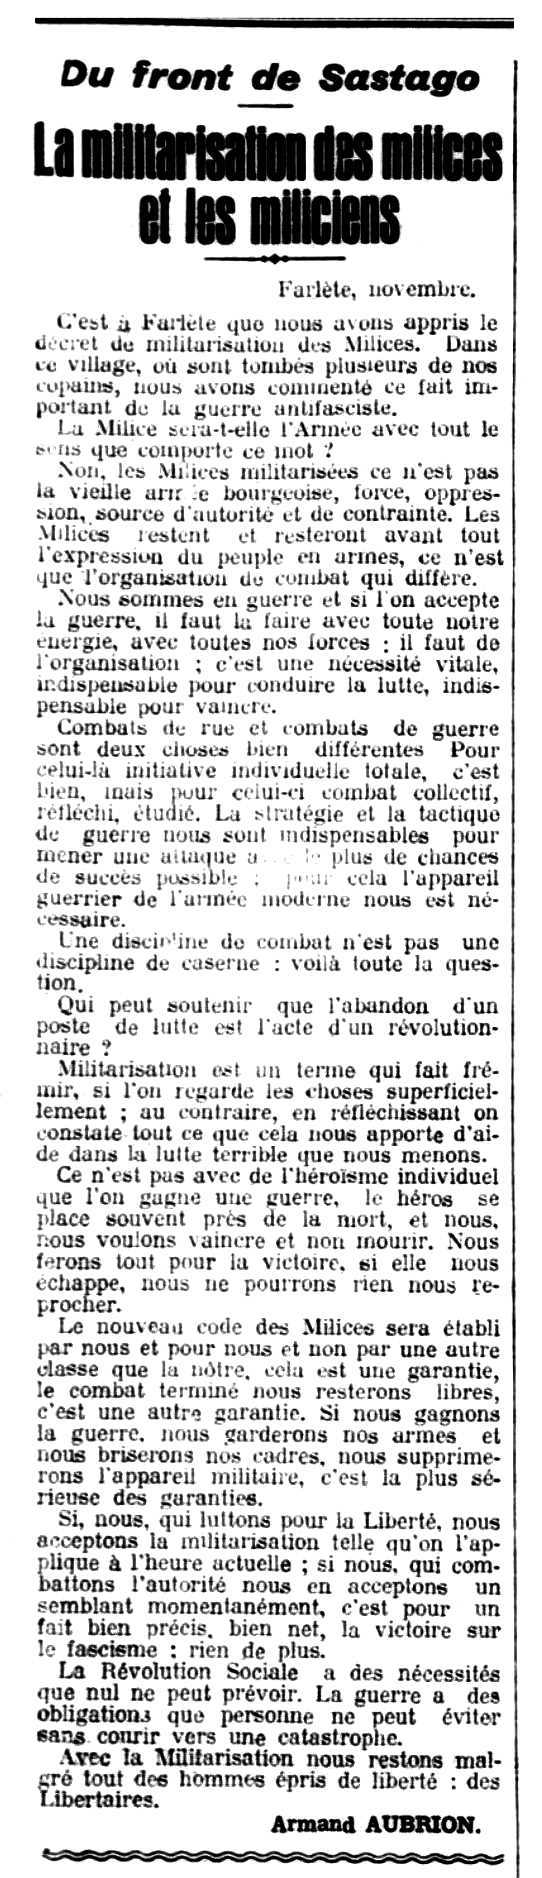 Article d'Armand Aubrion aparegut en el periòdic parisenc "Le Libertaire" del 27 de novembre de 1936